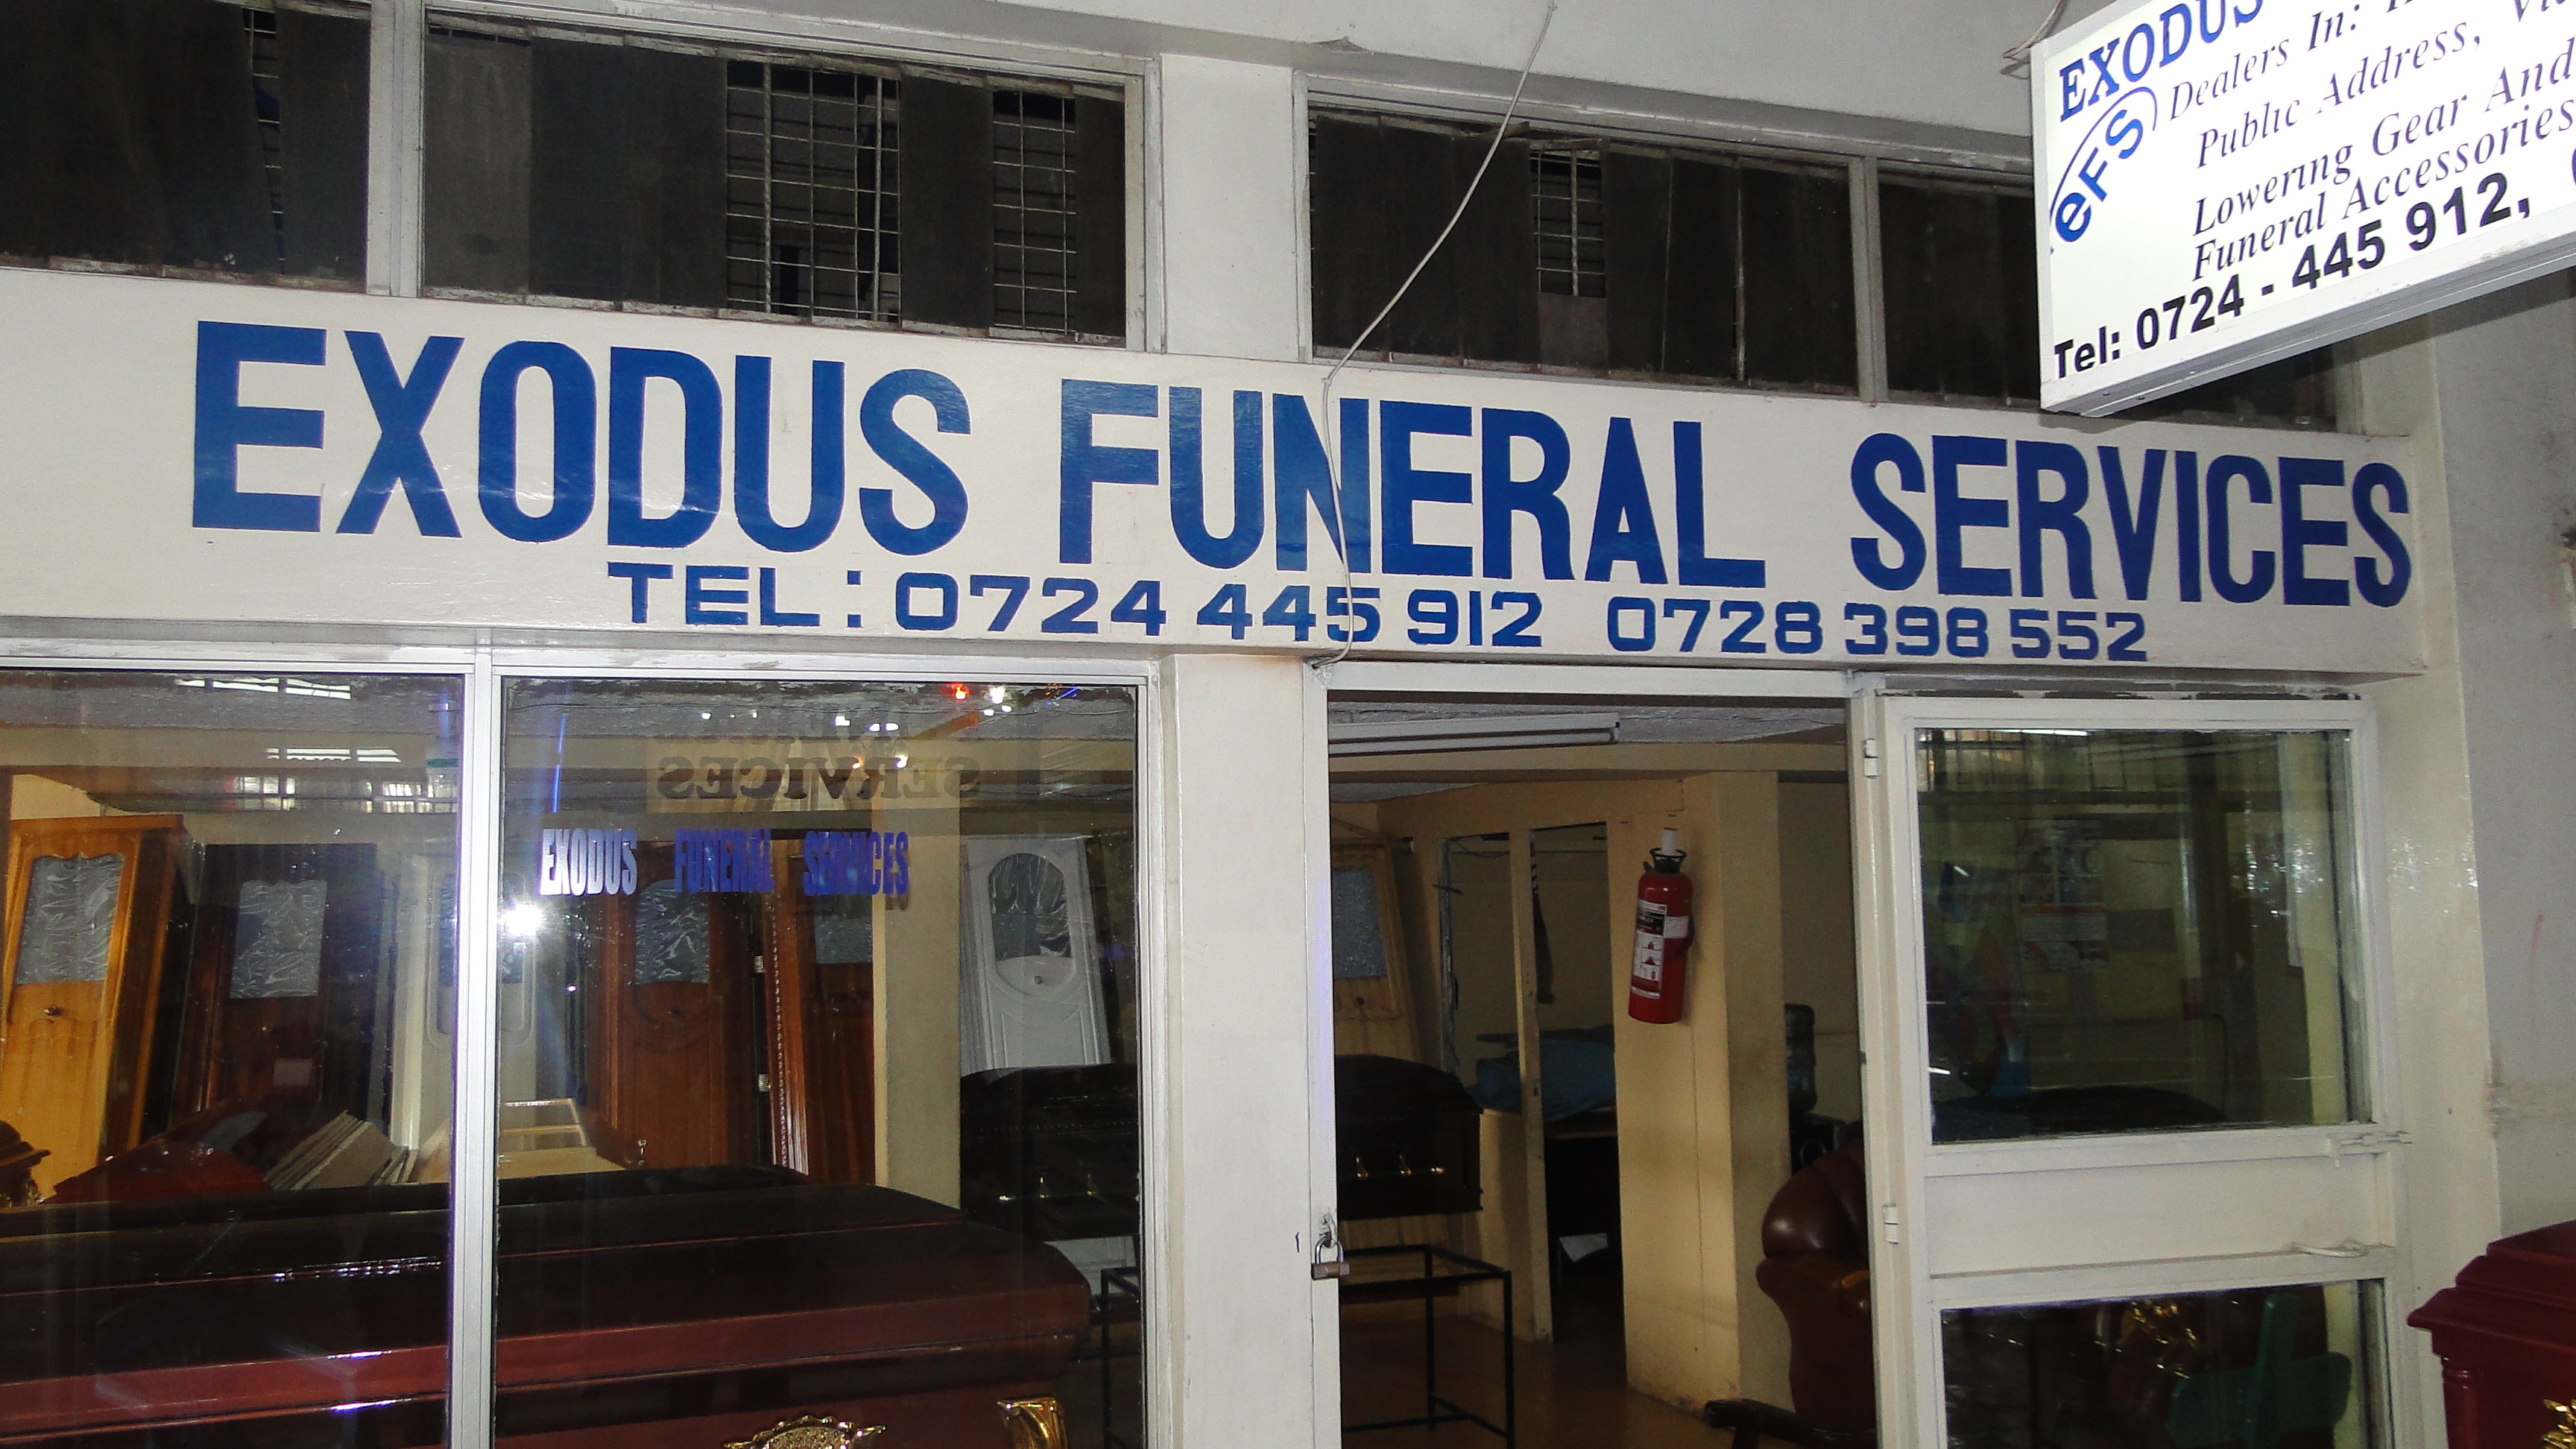 Funeral homes in Kenya – Exodus Funeral Services Kenya